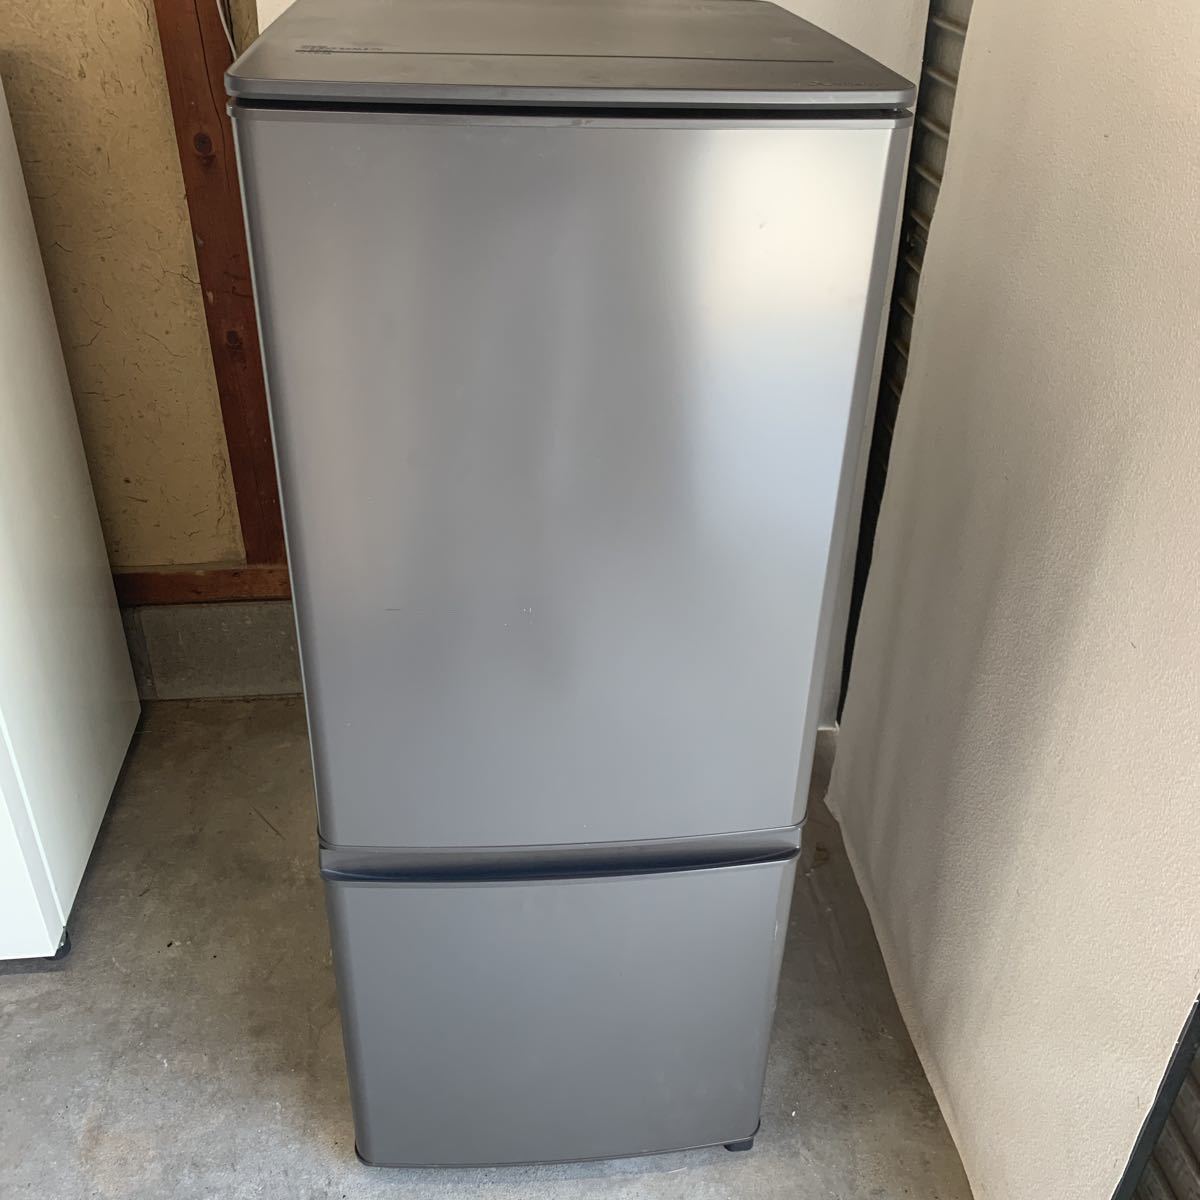 レコレクション 三菱 ノンフロン冷凍冷蔵庫 2ドア冷蔵庫 MR-P15F